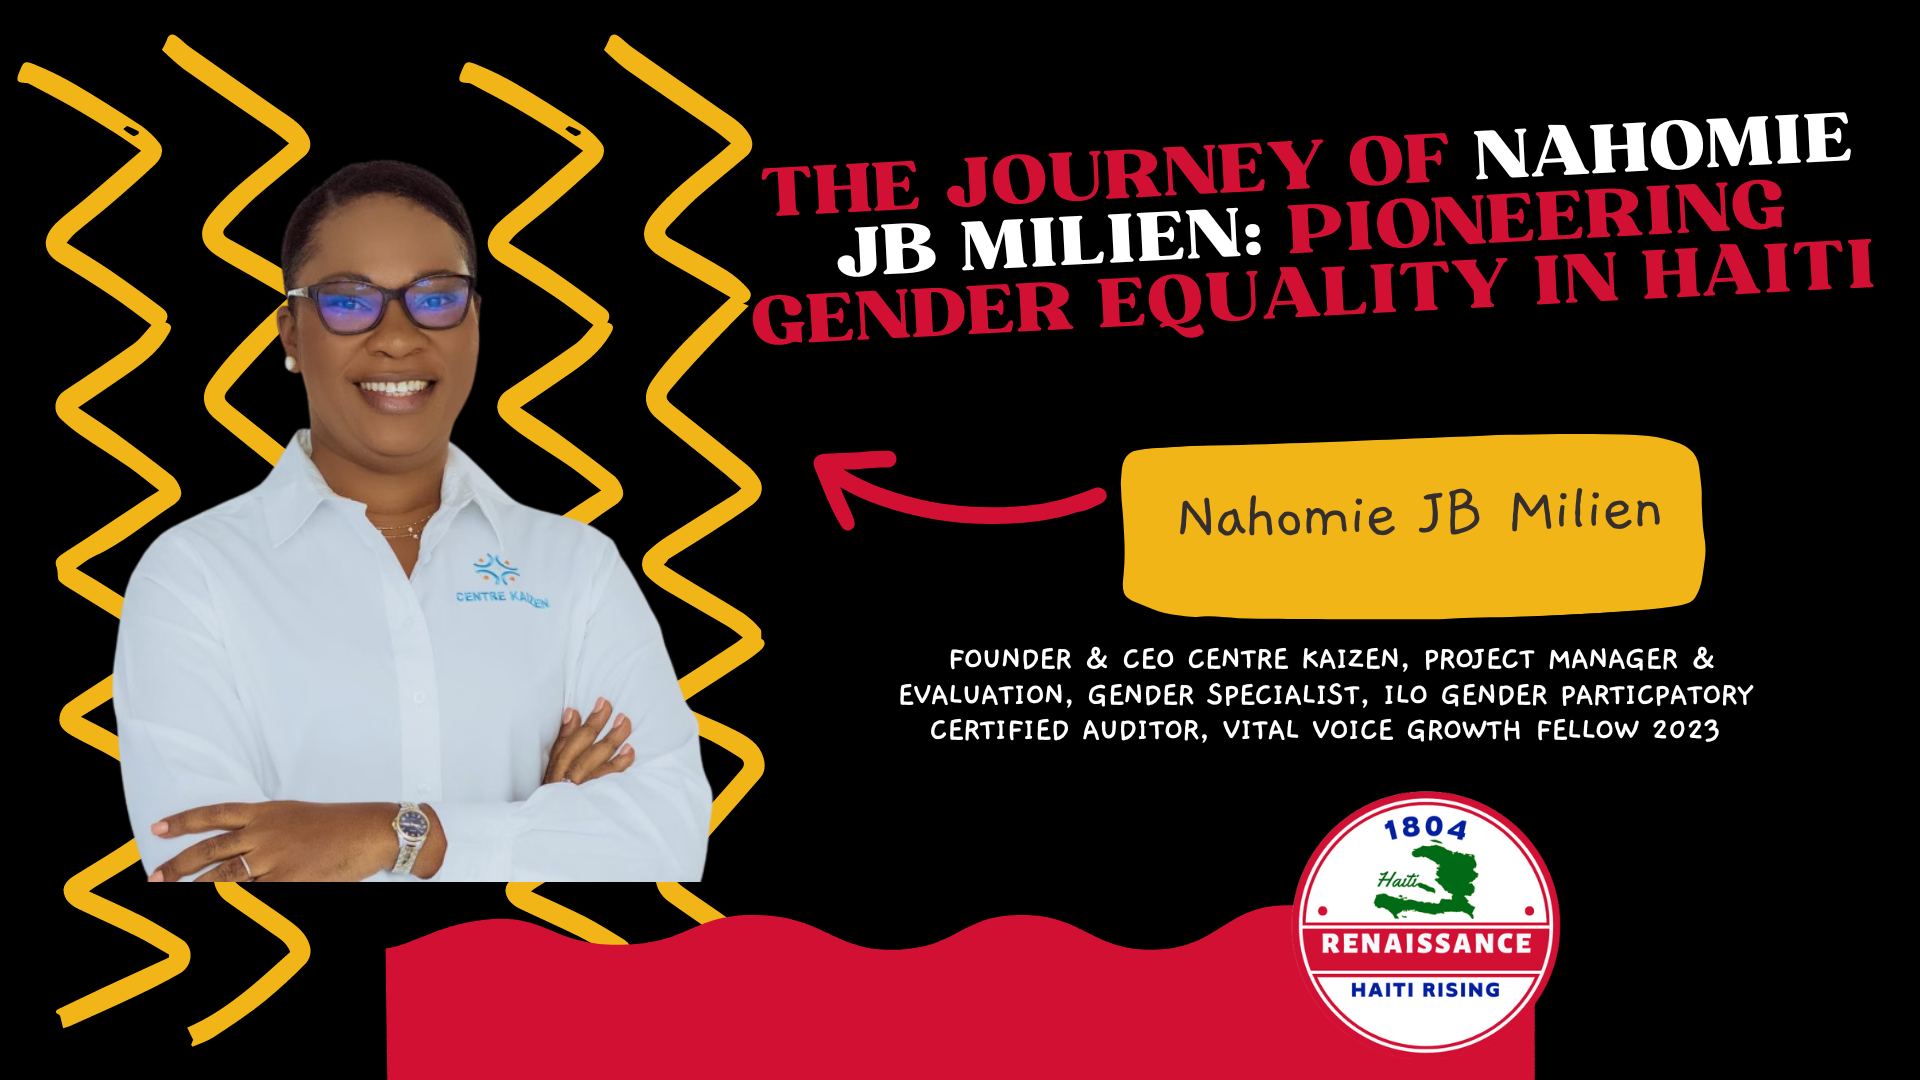 Le parcours de Nahomie JB Millien : pionnière de l'égalité des sexes en Haïti/ podcast "1804 Renaissance Show"